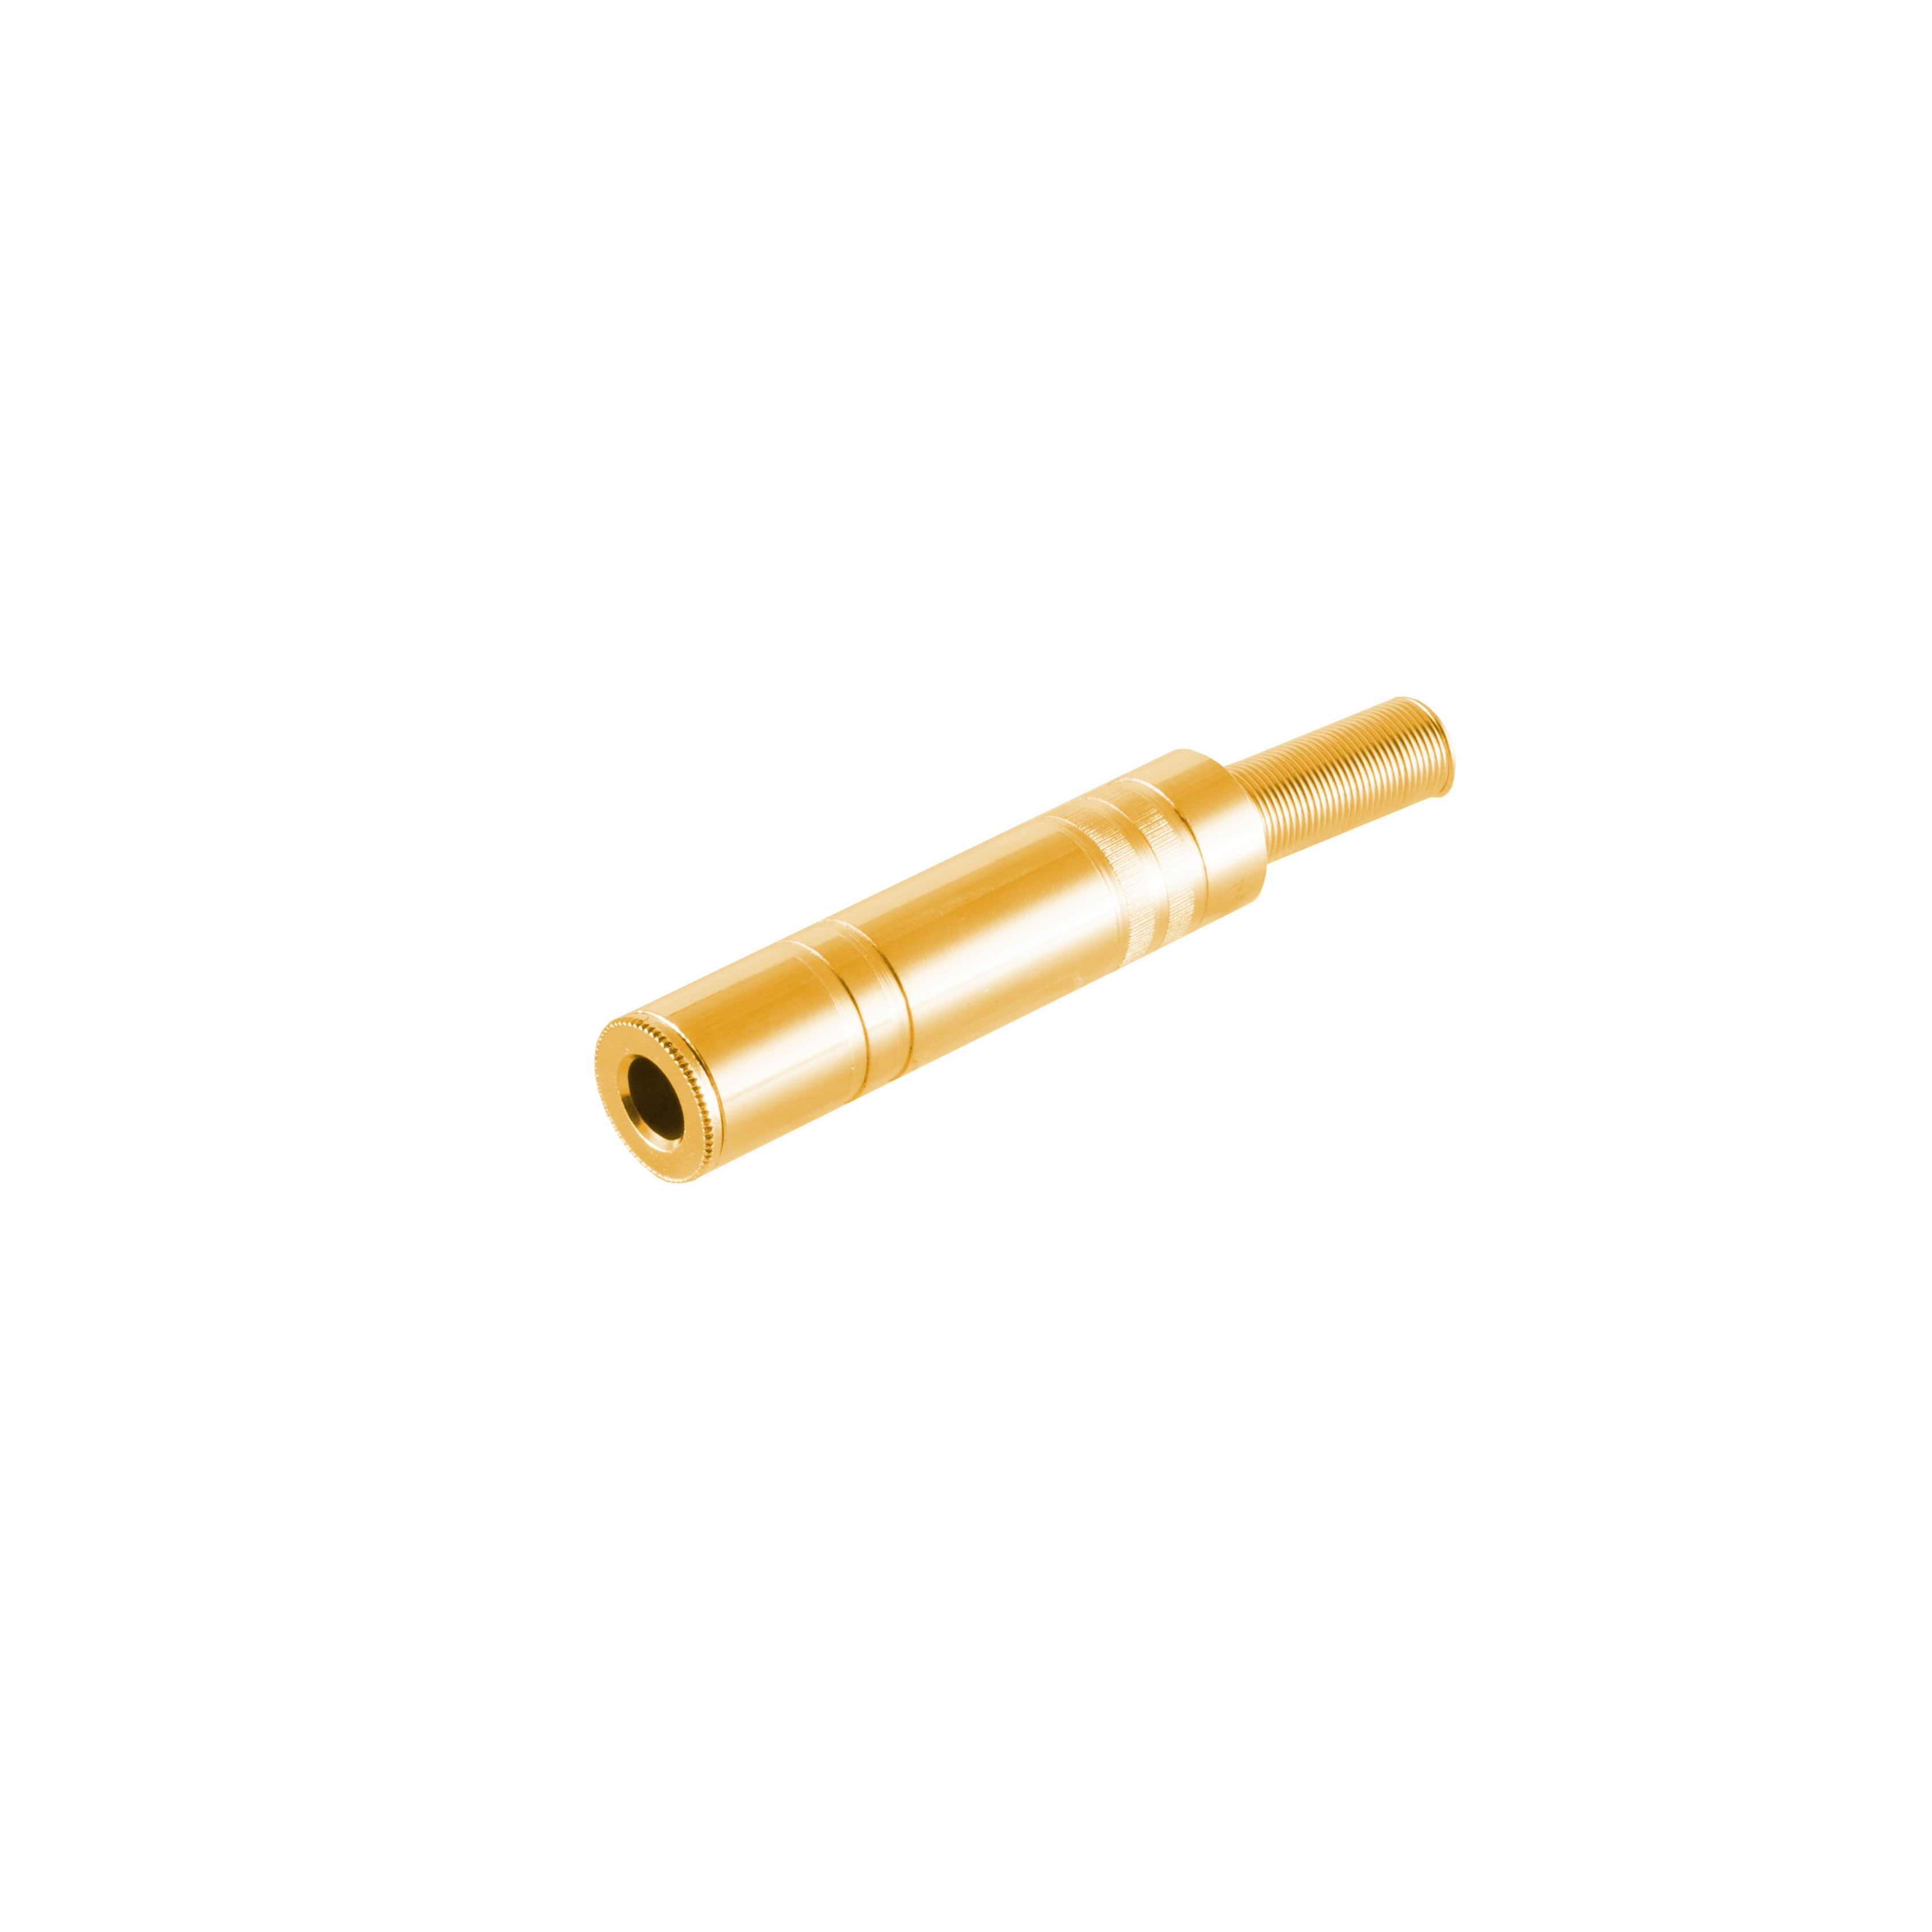 KABELBUDE vergoldet Metall, Klinke 6,3mm, Stereo Klinkenkupplung